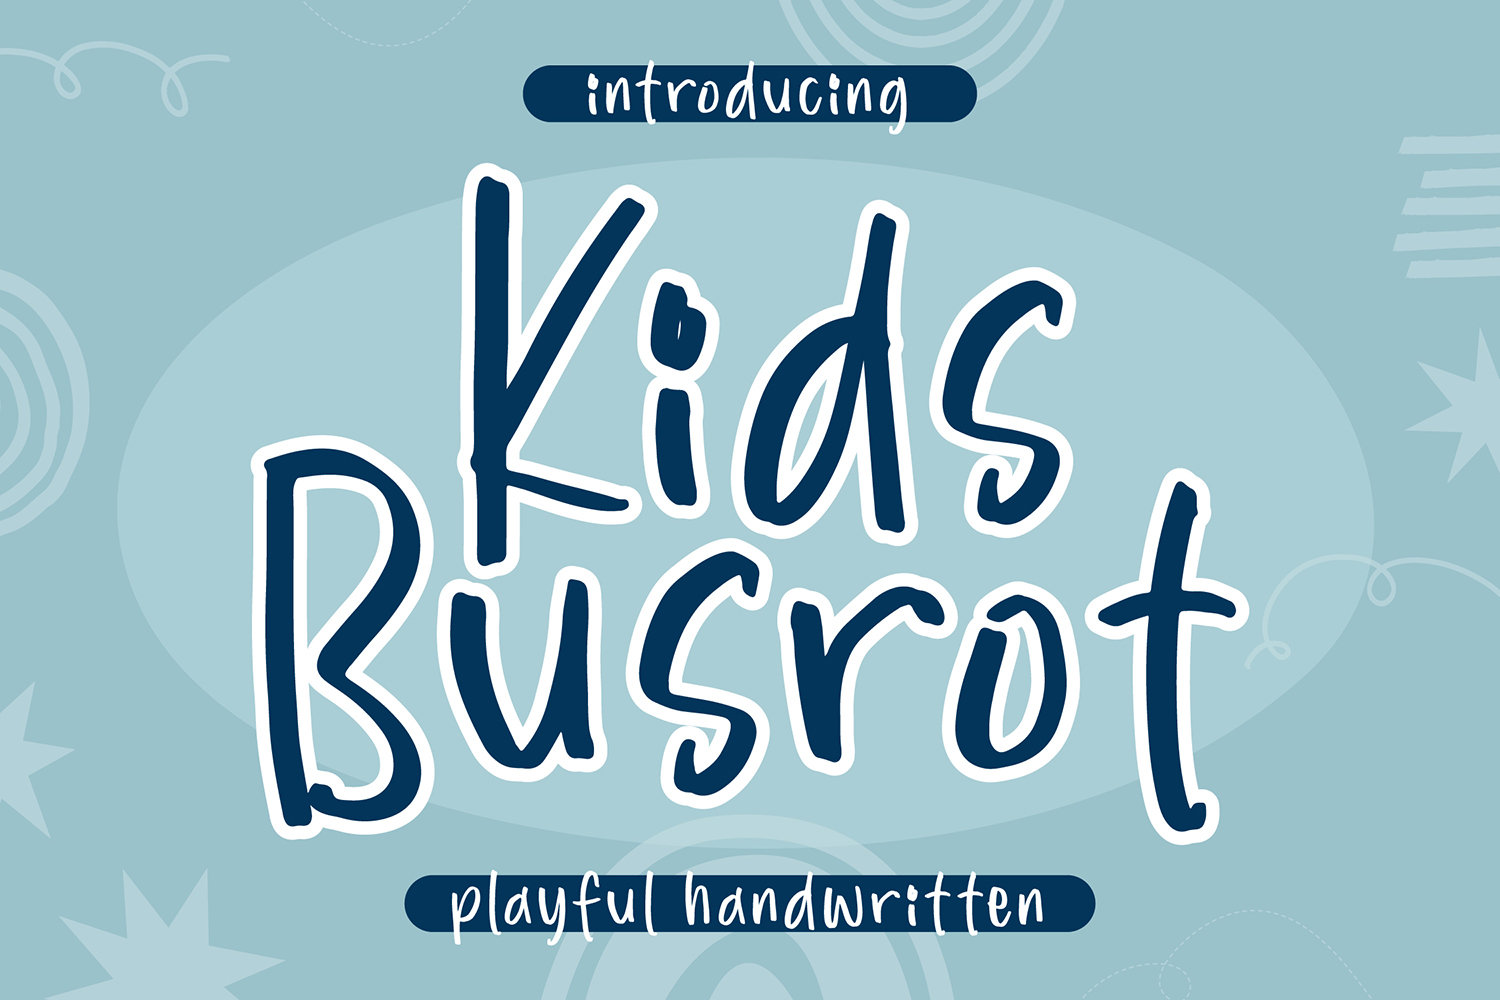 Kids Busrot Free Font